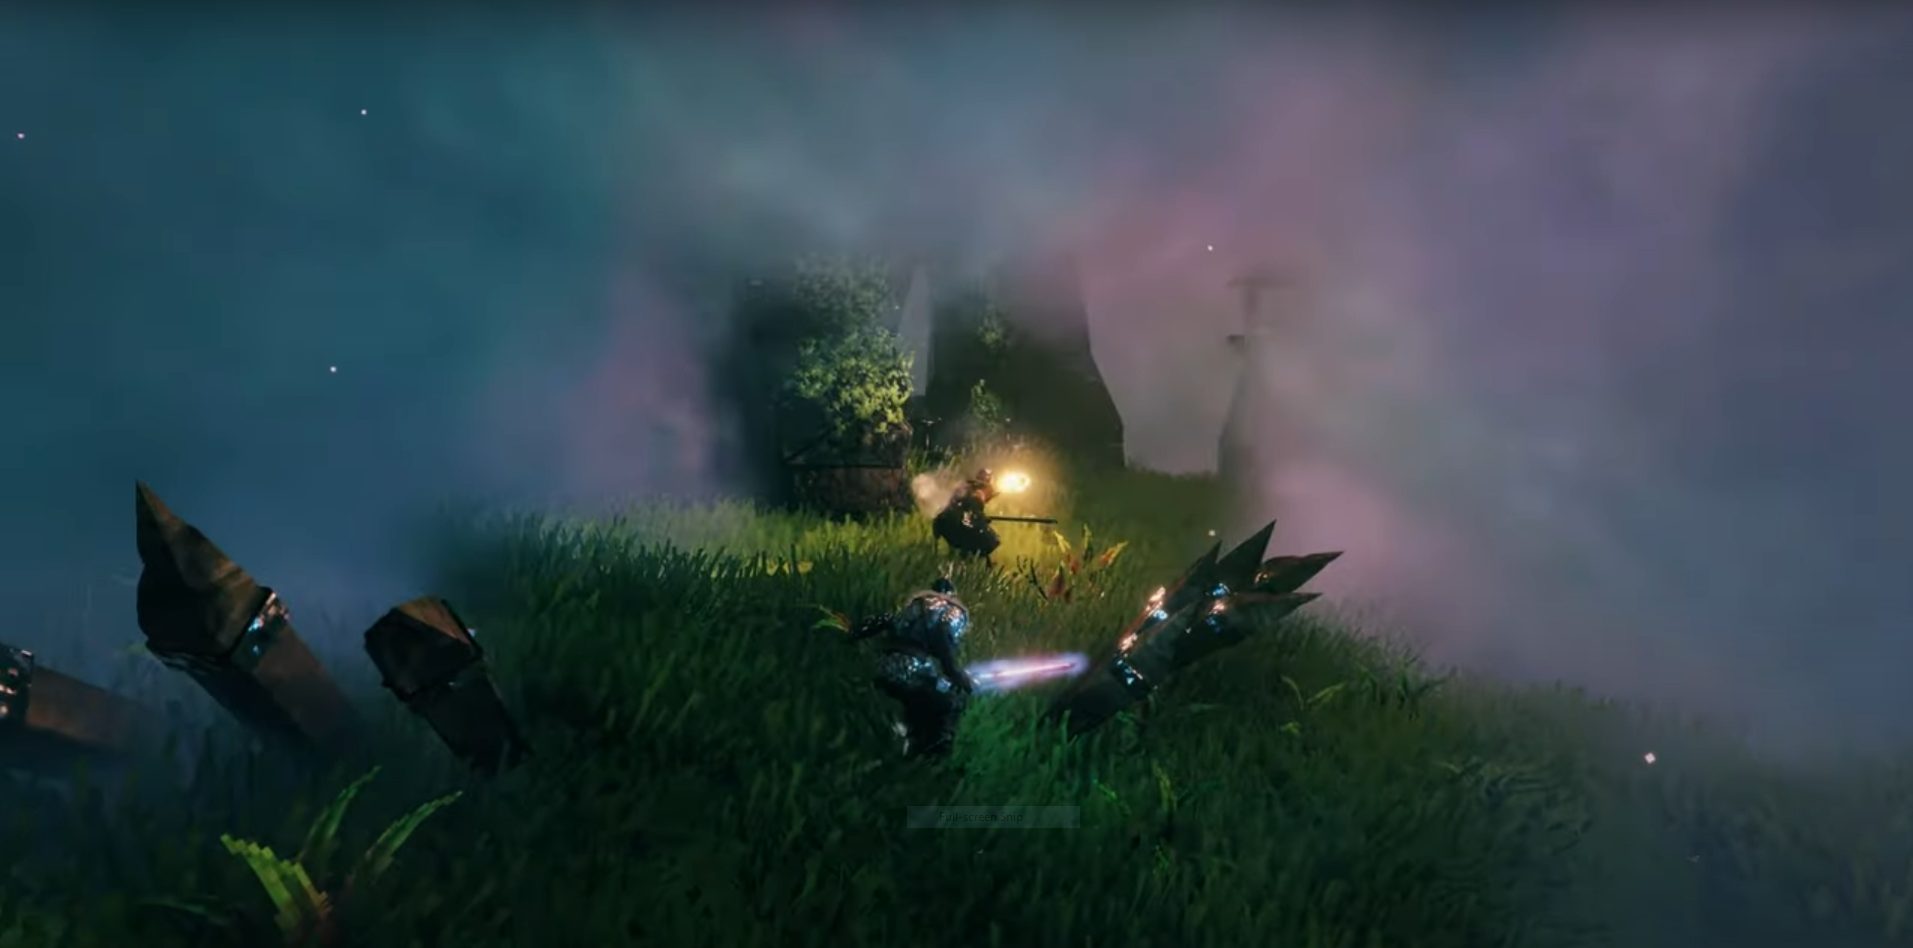 mistlands gameplay trailer torch creeping through mist